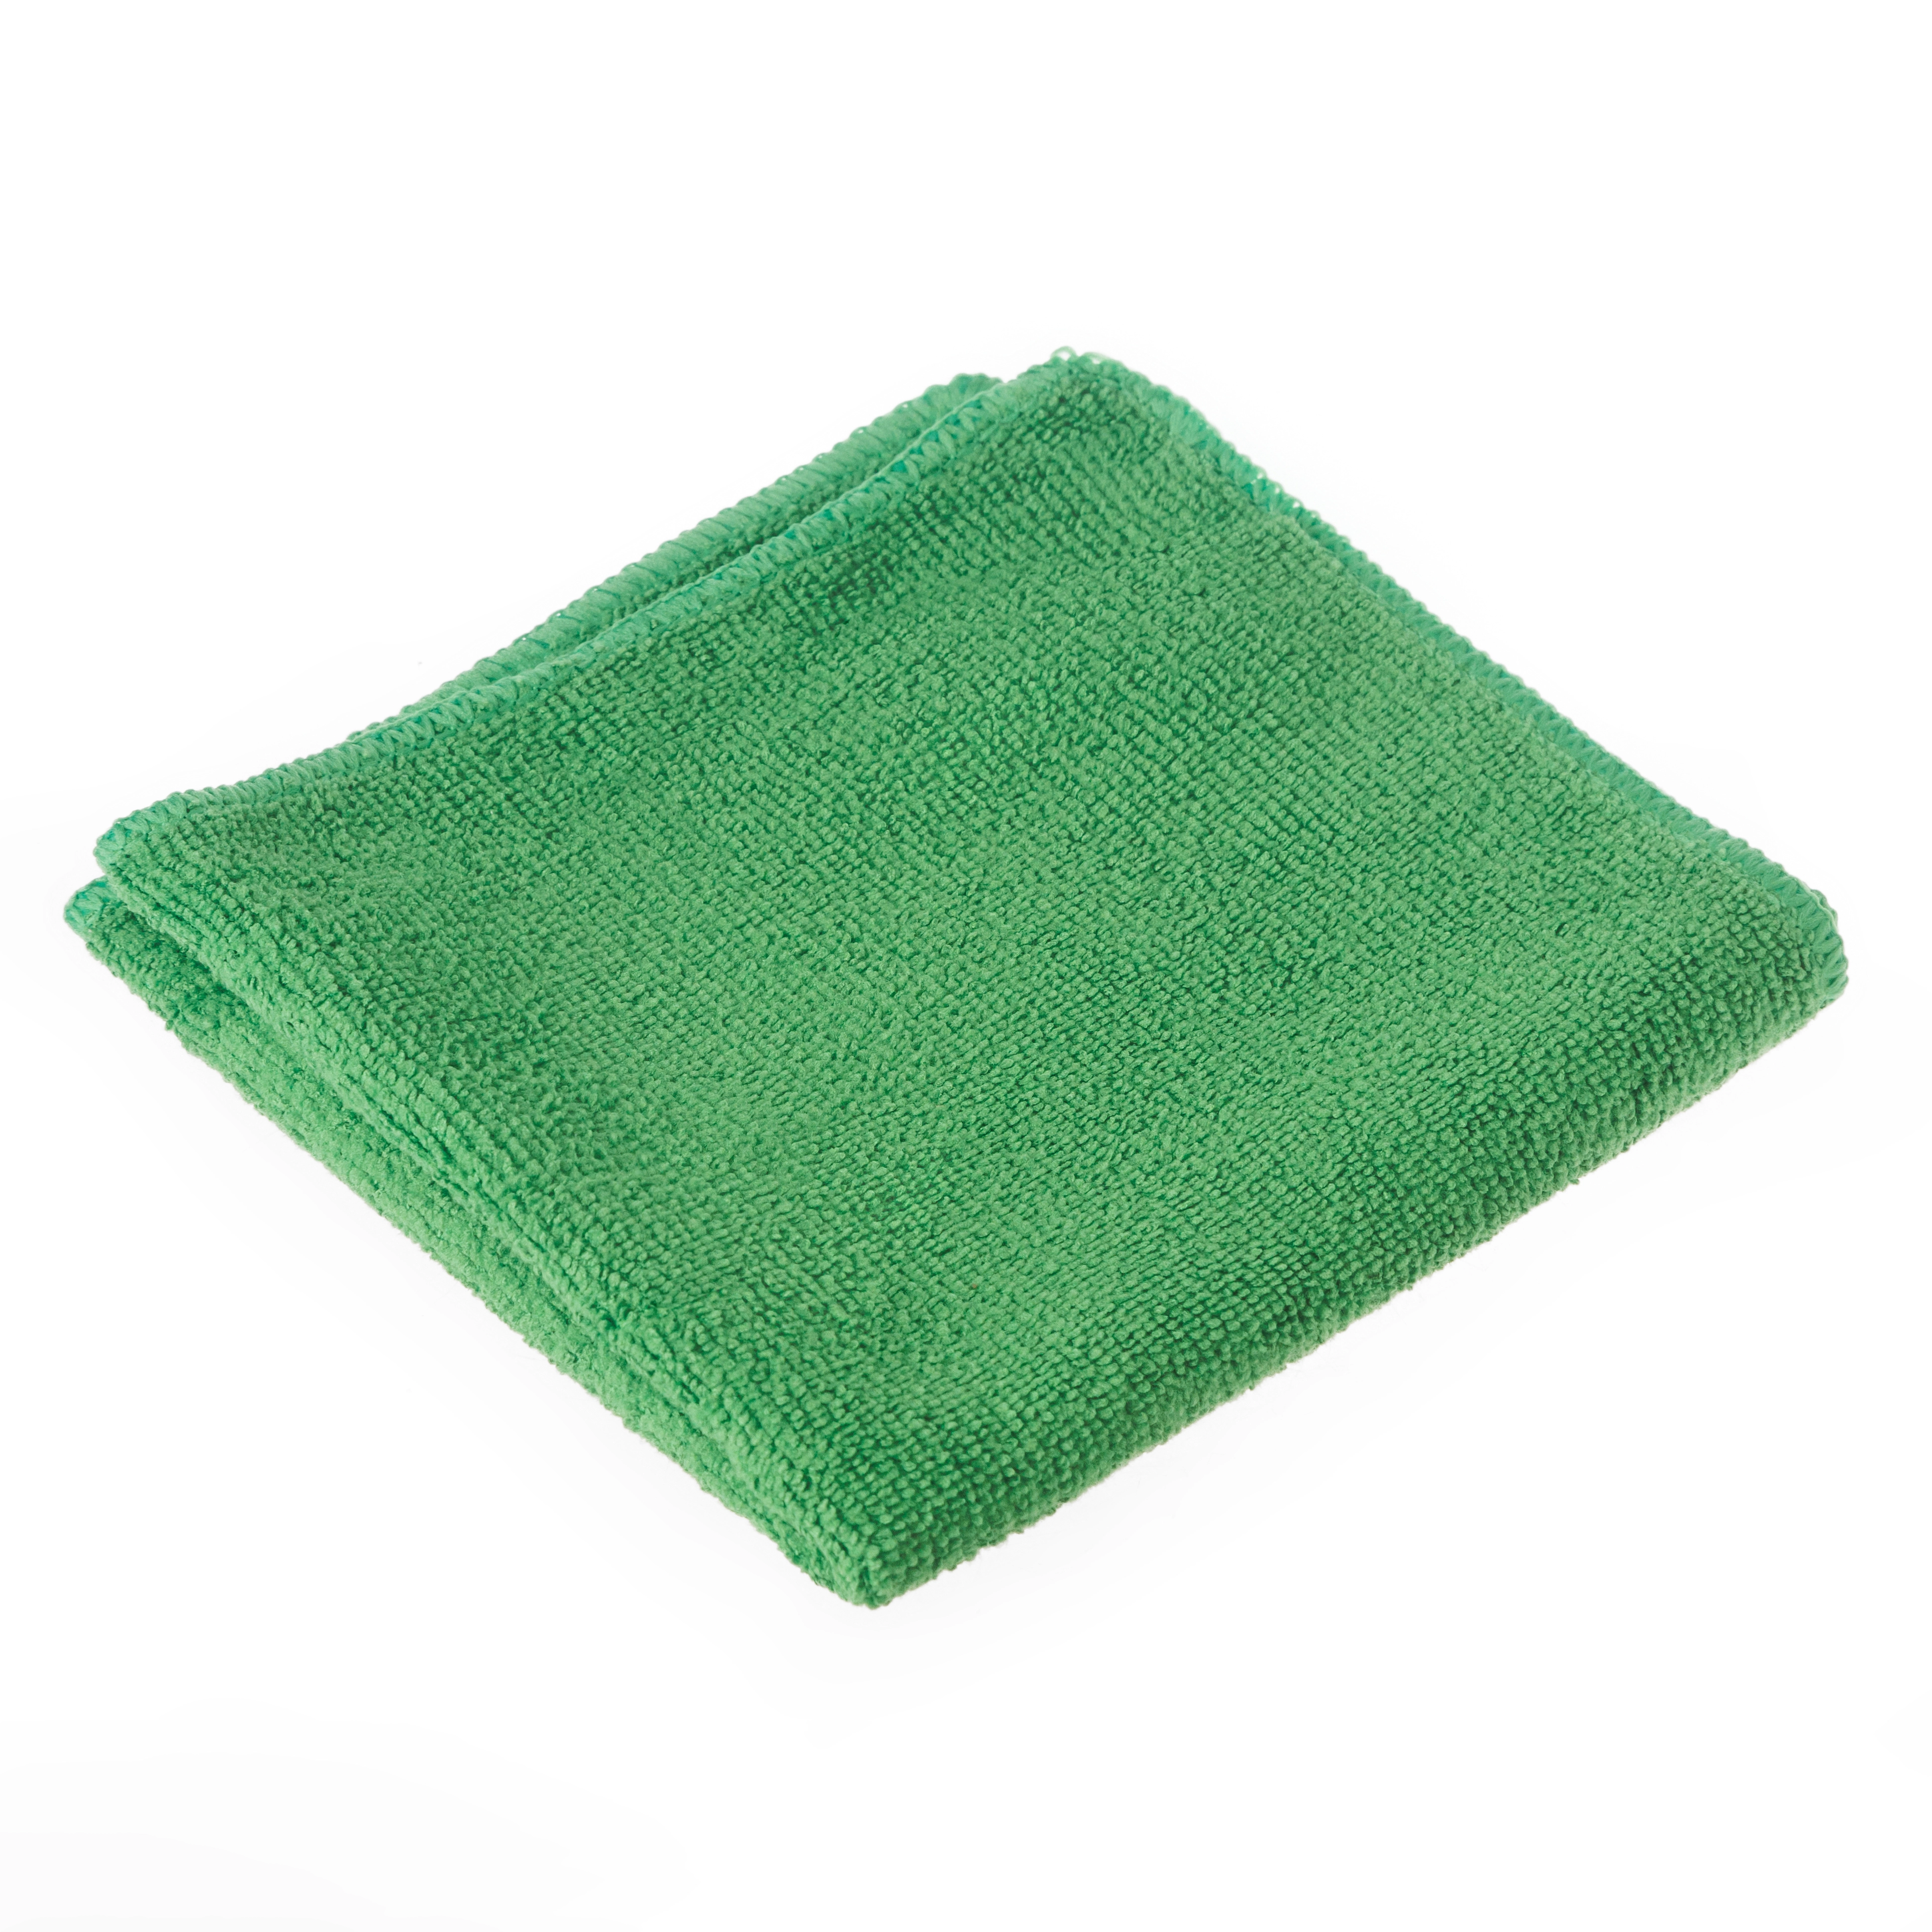 Салфетка из микрофибры, размер 30x30 см, плотность 300г/м2, цвет зеленый - AS300G3030